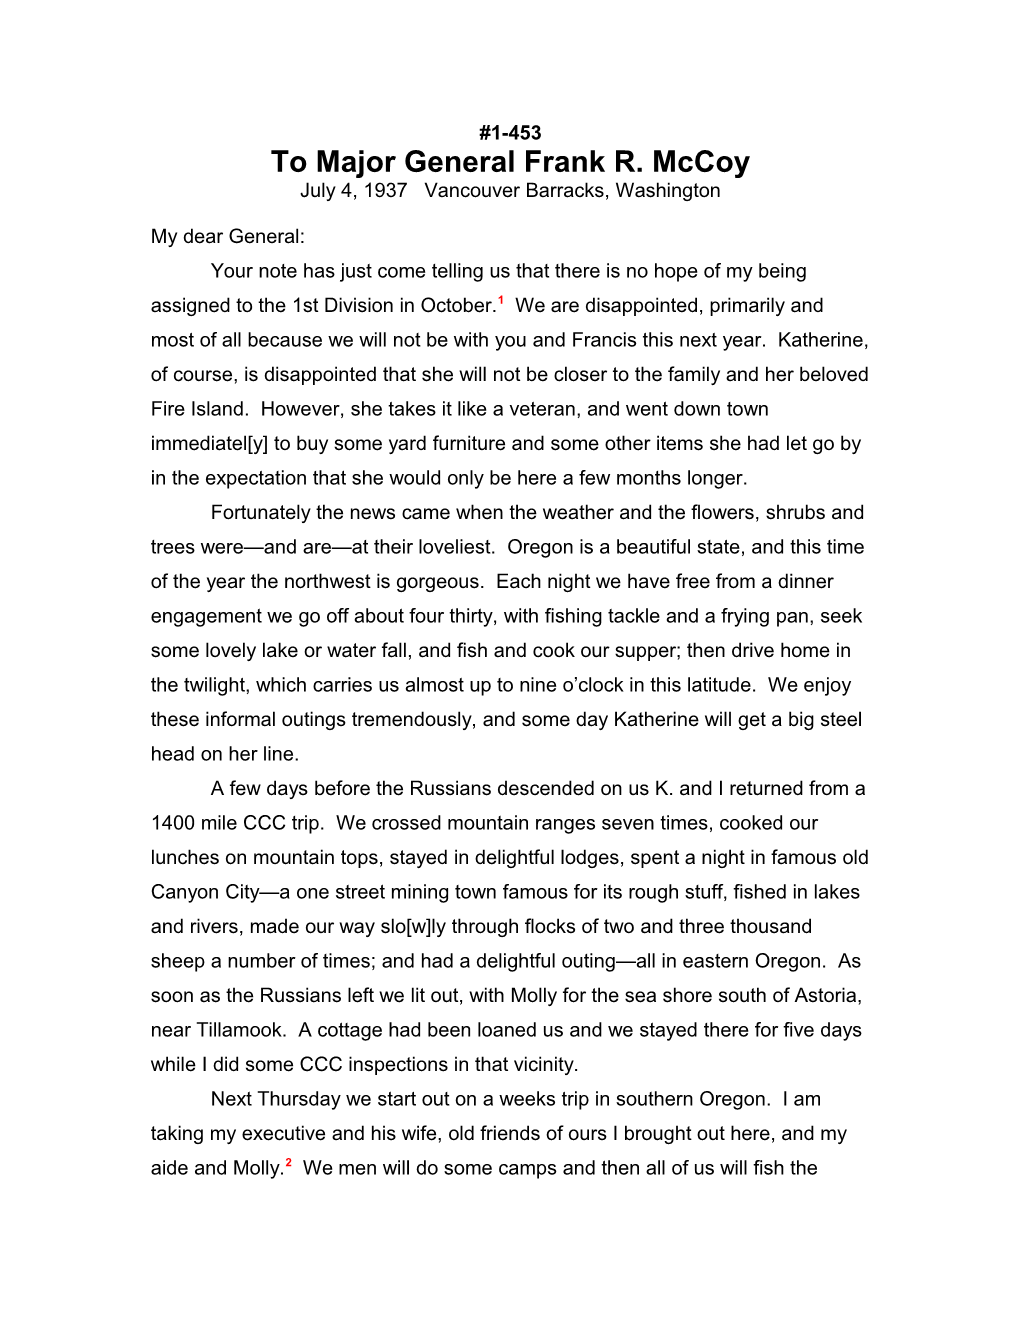 To Major General Frank R. Mccoy